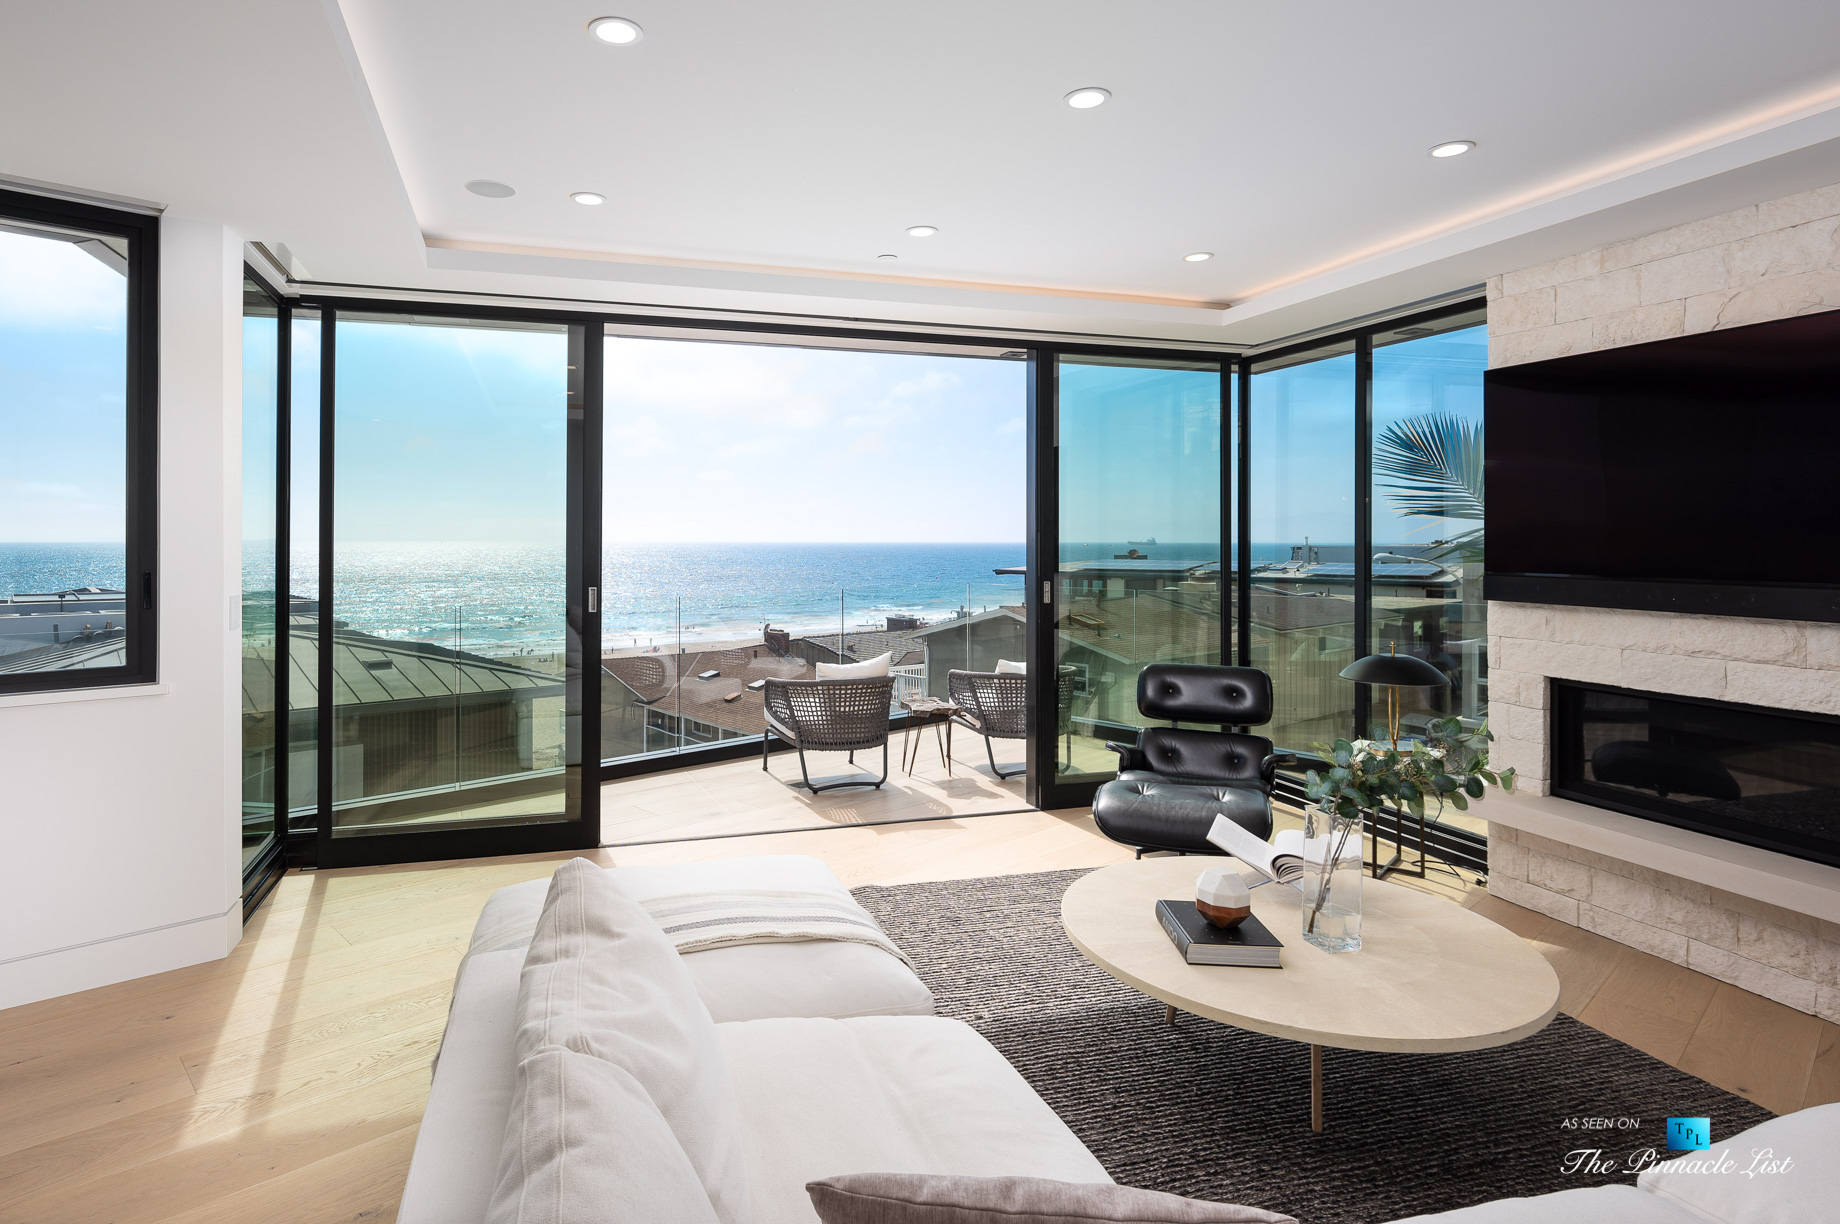 2016 Ocean Dr, Manhattan Beach, CA, USA - Living Room - Luxury Real Estate - Modern Ocean View Home